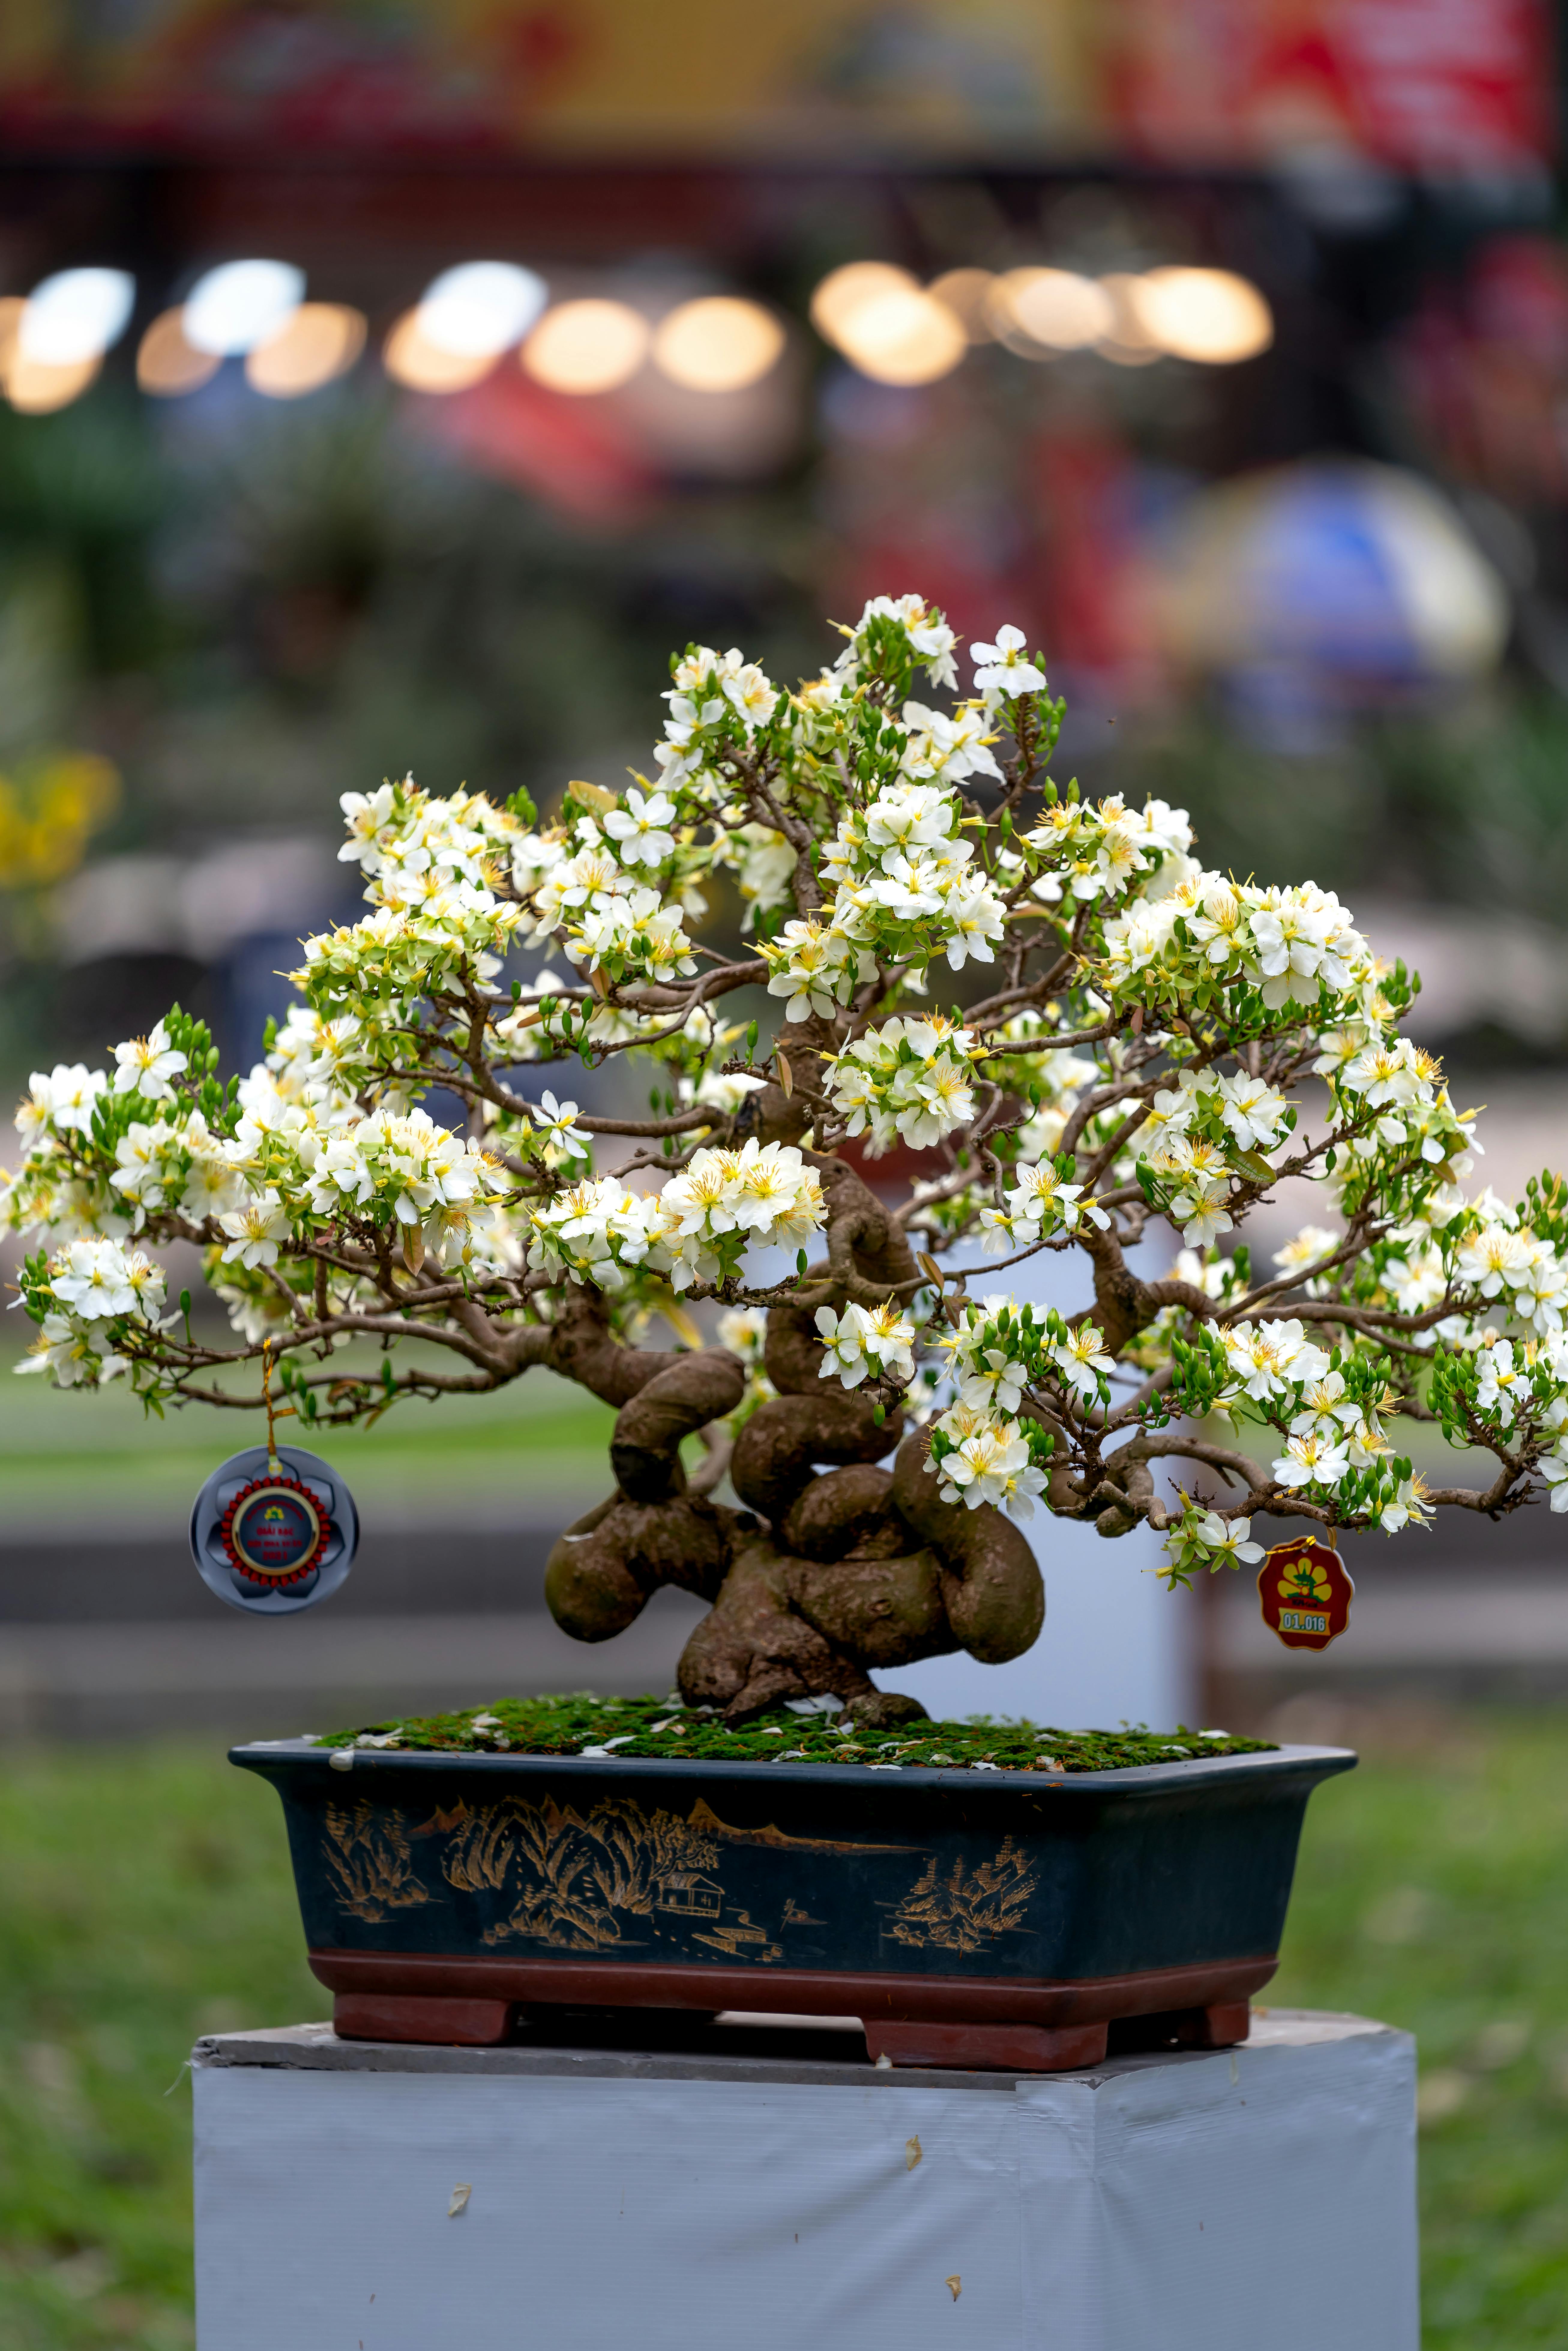 Foto de stock gratuita sobre bonsái, en conserva, floreciente, flores  blancas, fondo borroso, fotografía de flores, tiro vertical